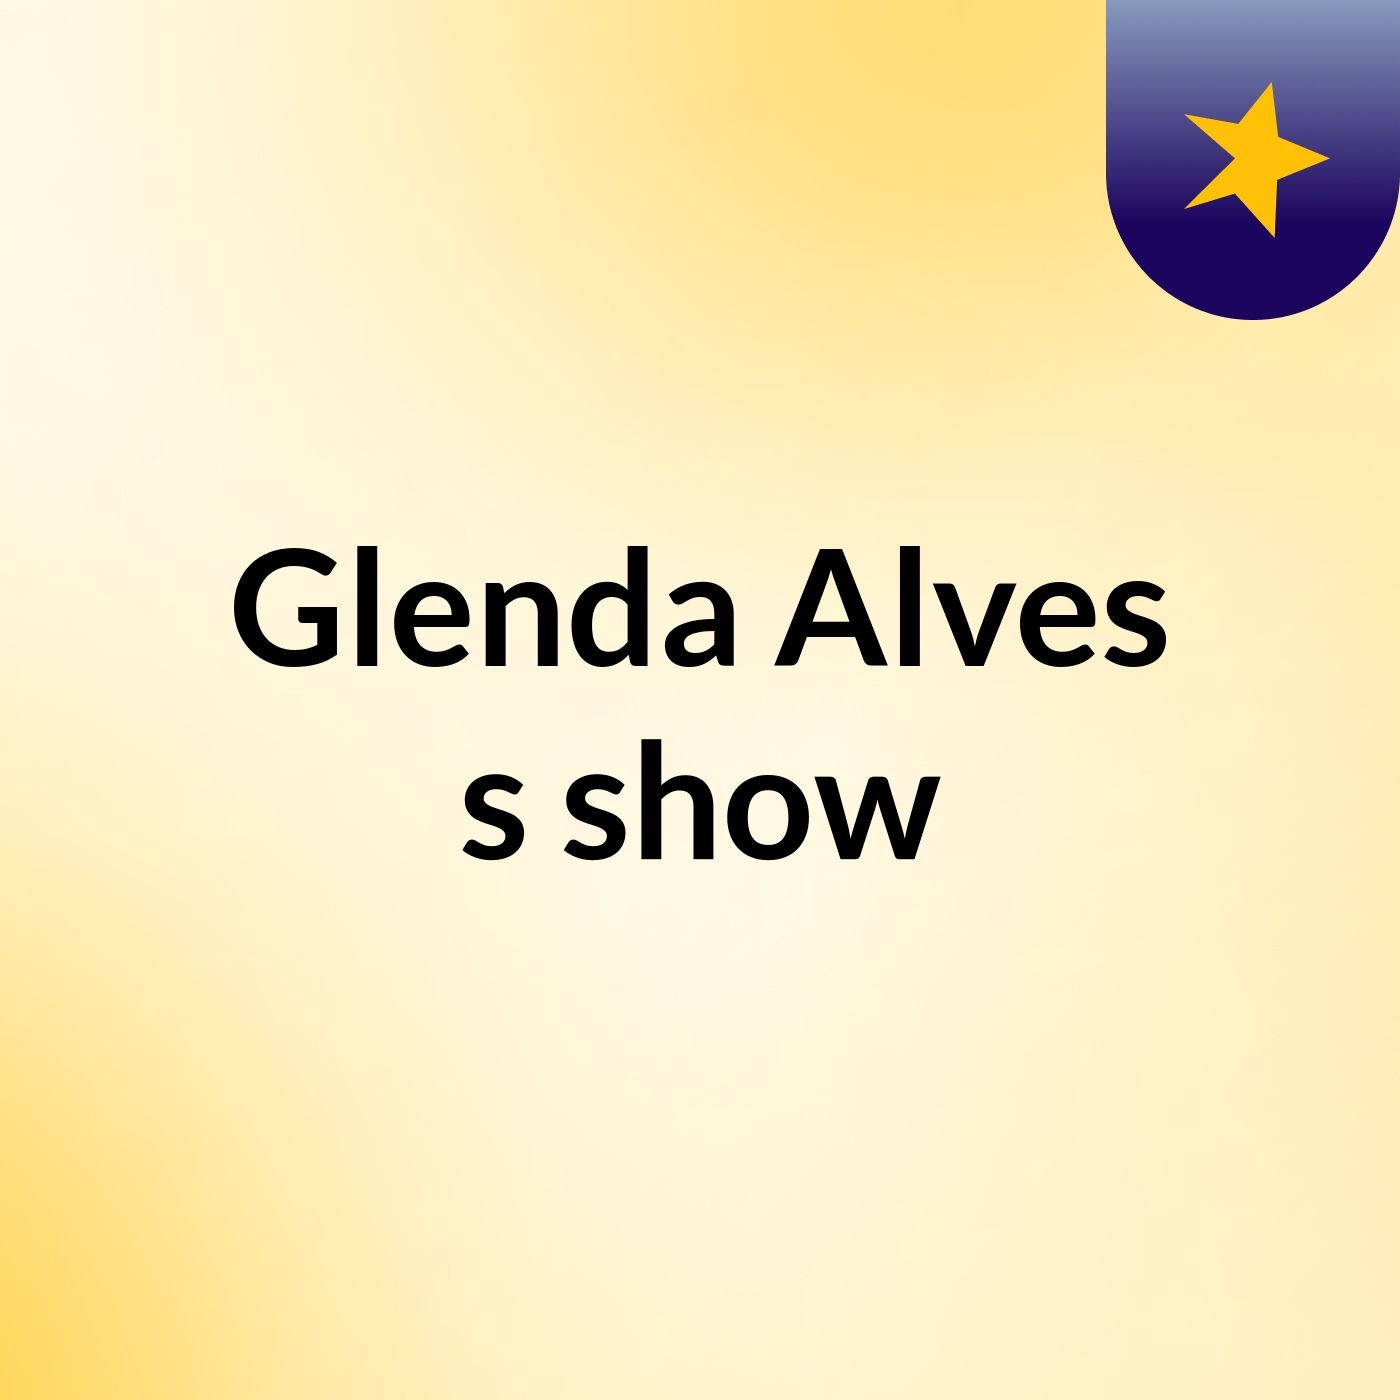 Glenda Alves's show